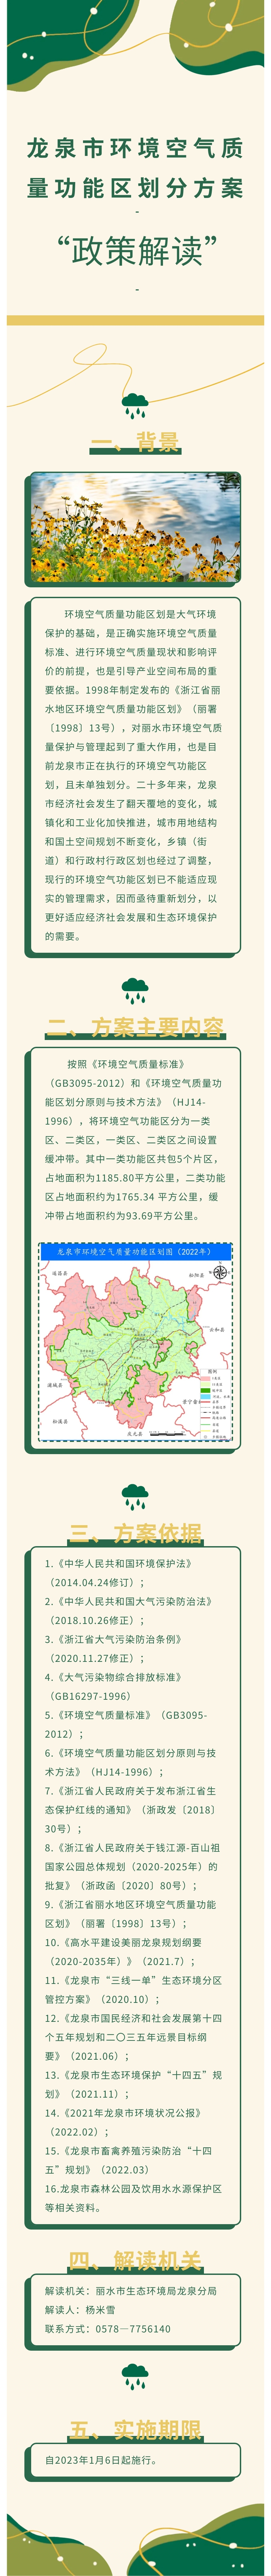 龙泉市环境空气质量功能区划分方案政策解读.jpg